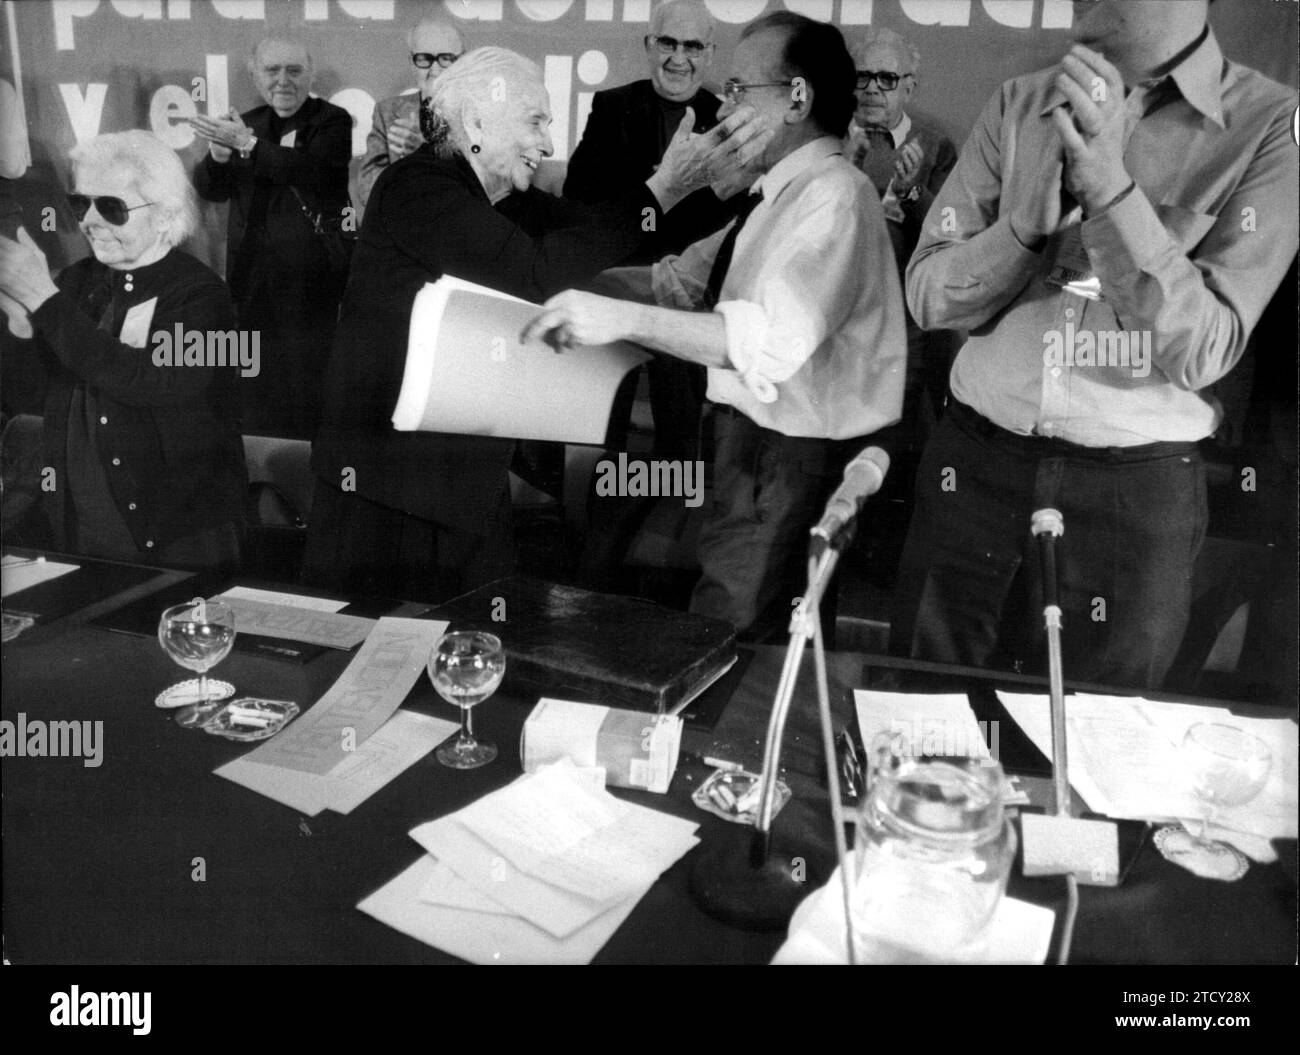 03/31/1978. IX. Kongress der PCE: Im Bild umarmen sich Santiago Carrillo und Dolores Ibarruri nach der Rede des Ersten. Quelle: Album/Archivo ABC Stockfoto